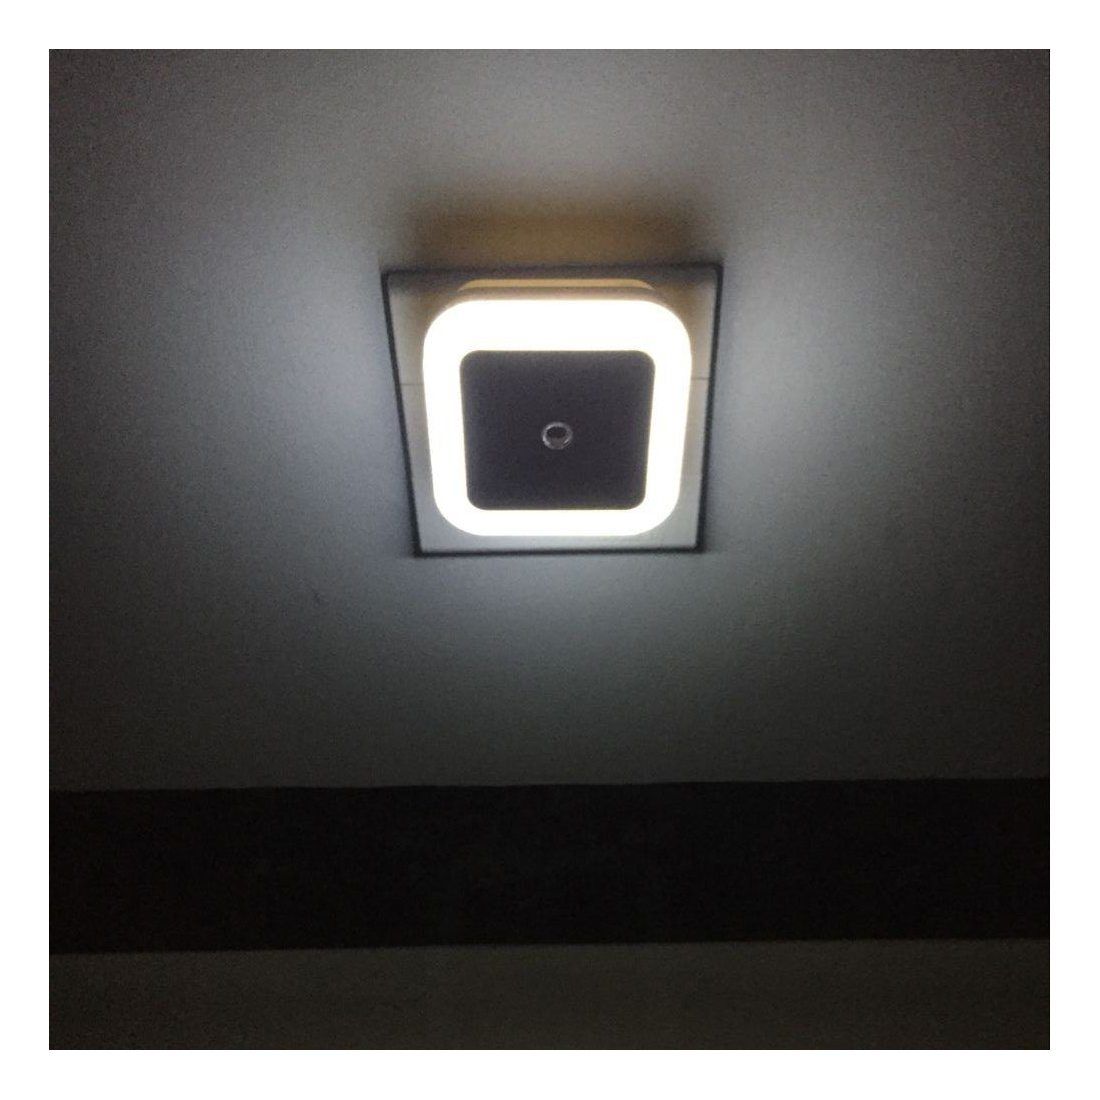 BAYORK LED Veilleuse Lampe de Nuit 0,5W Dusk to Dawn Capteur Automatique Détecteur de Lumière, Idéal pour Chambre Enfant Bébé